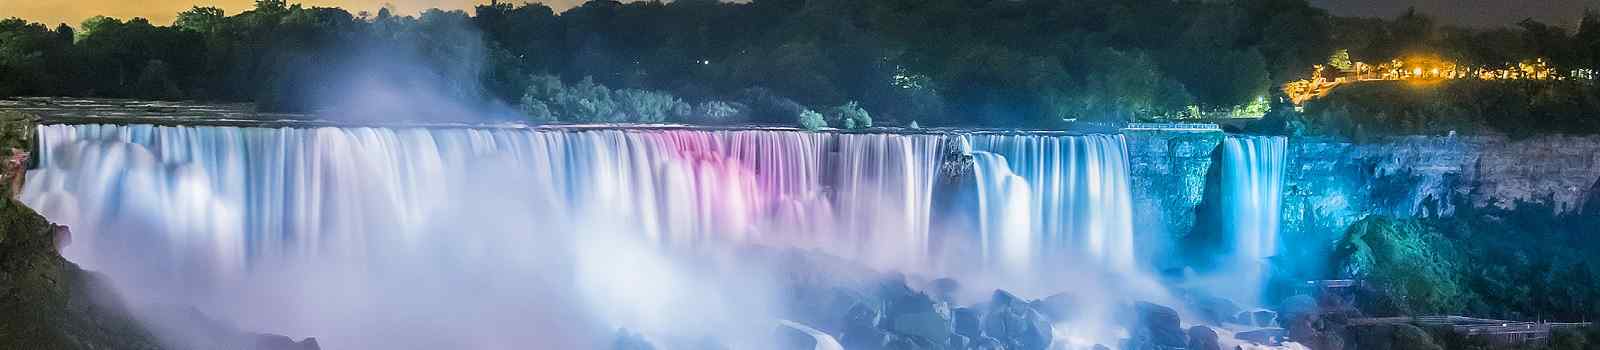 BUS-GLANZ-CAD  Juwelen des Nordostens Niagarafaelle farbenfroh beleuchtet in der Nacht